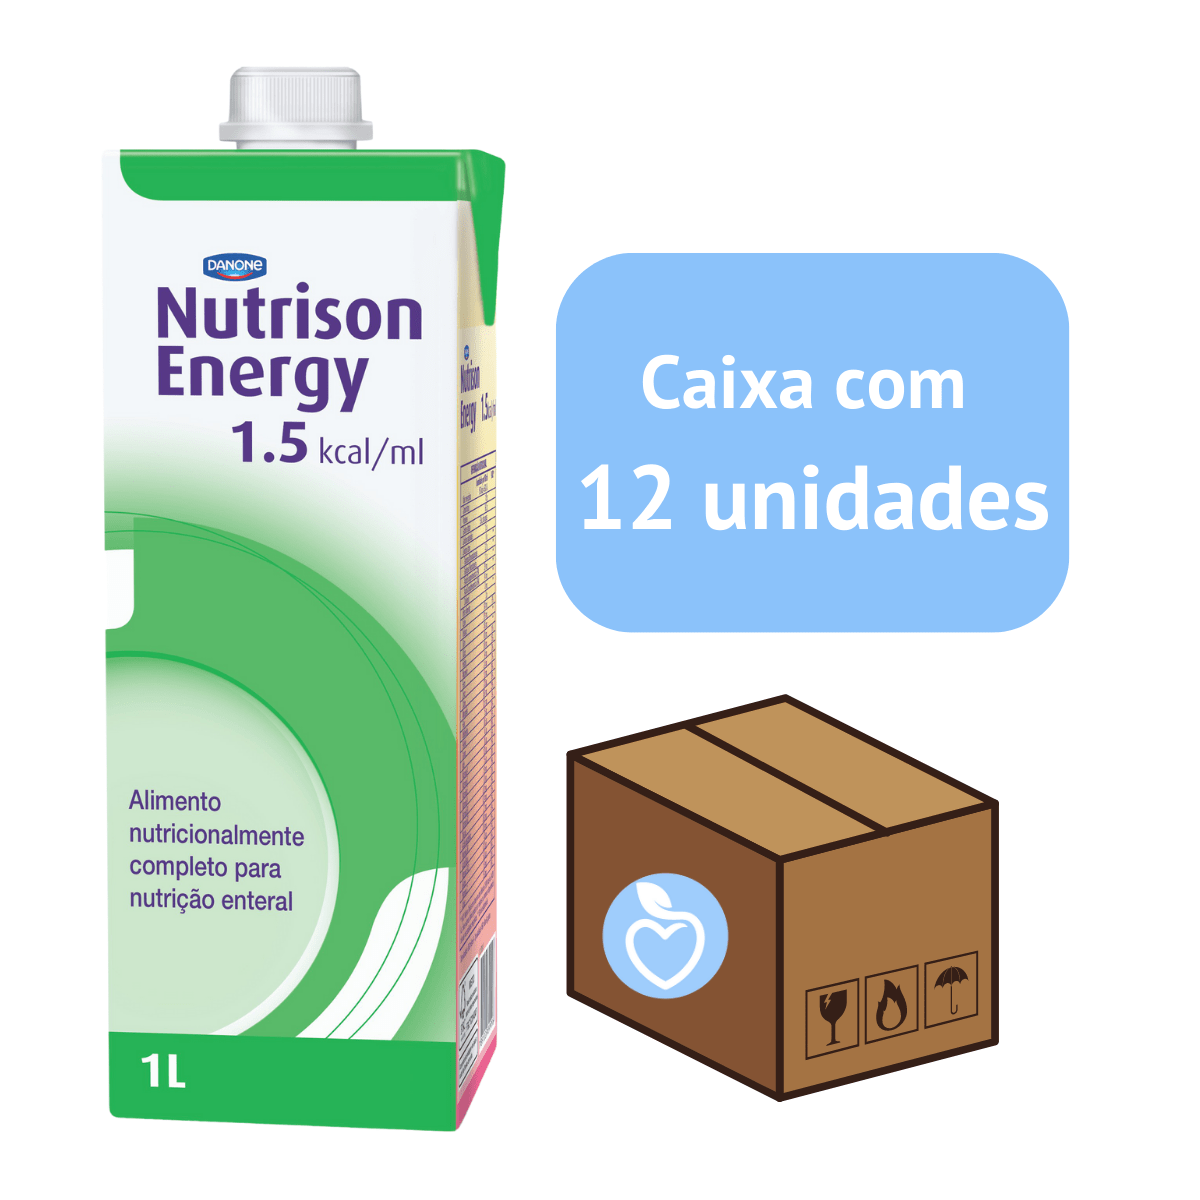 Nutrison Energy 1.5 caixa com 12 unidades - Danone